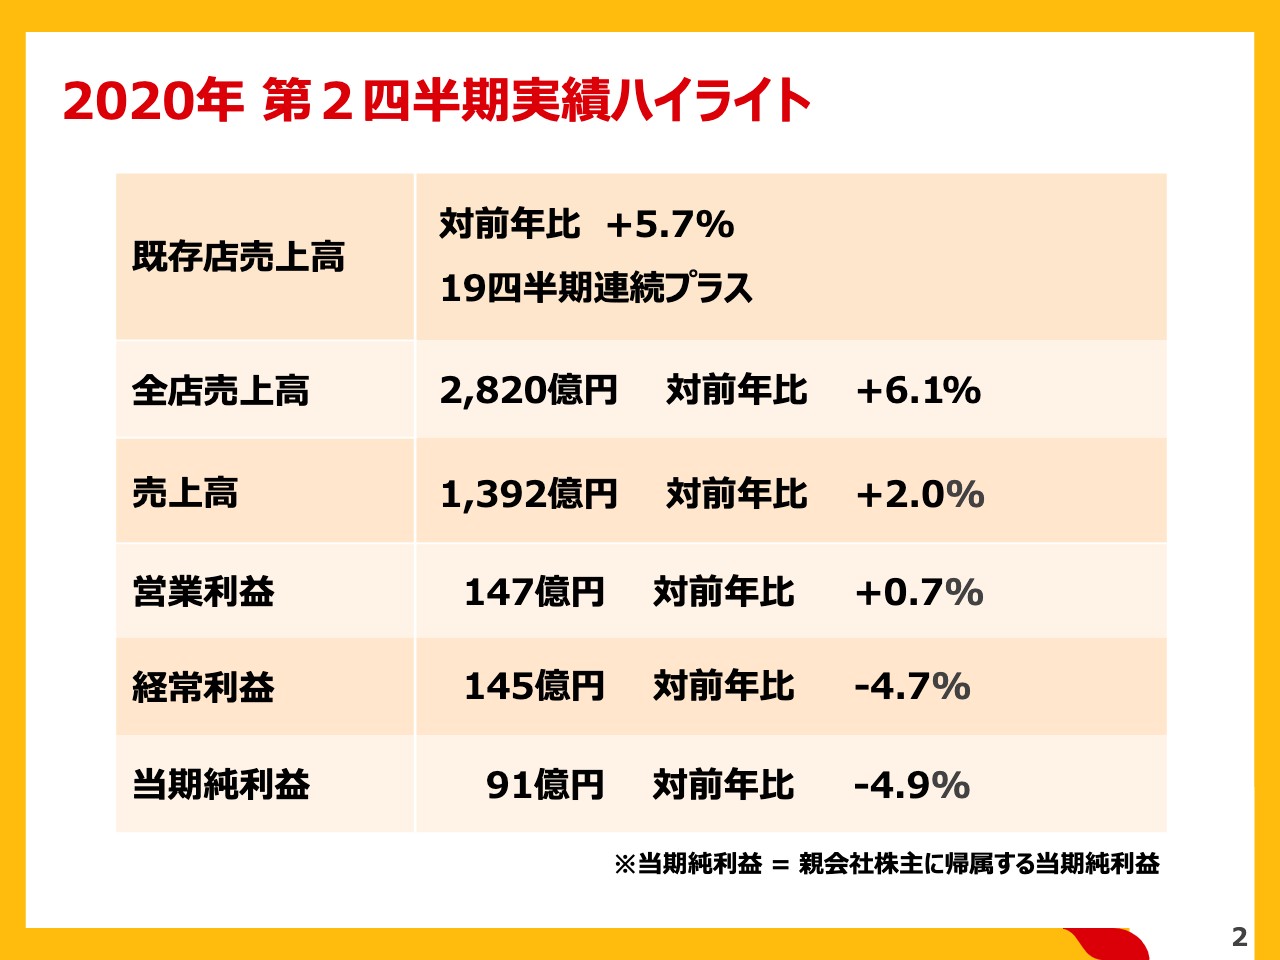 日本マクドナルドhd 店舗と人材強化に投資も2qの既存店売上高は19四半期連続プラス 財経新聞